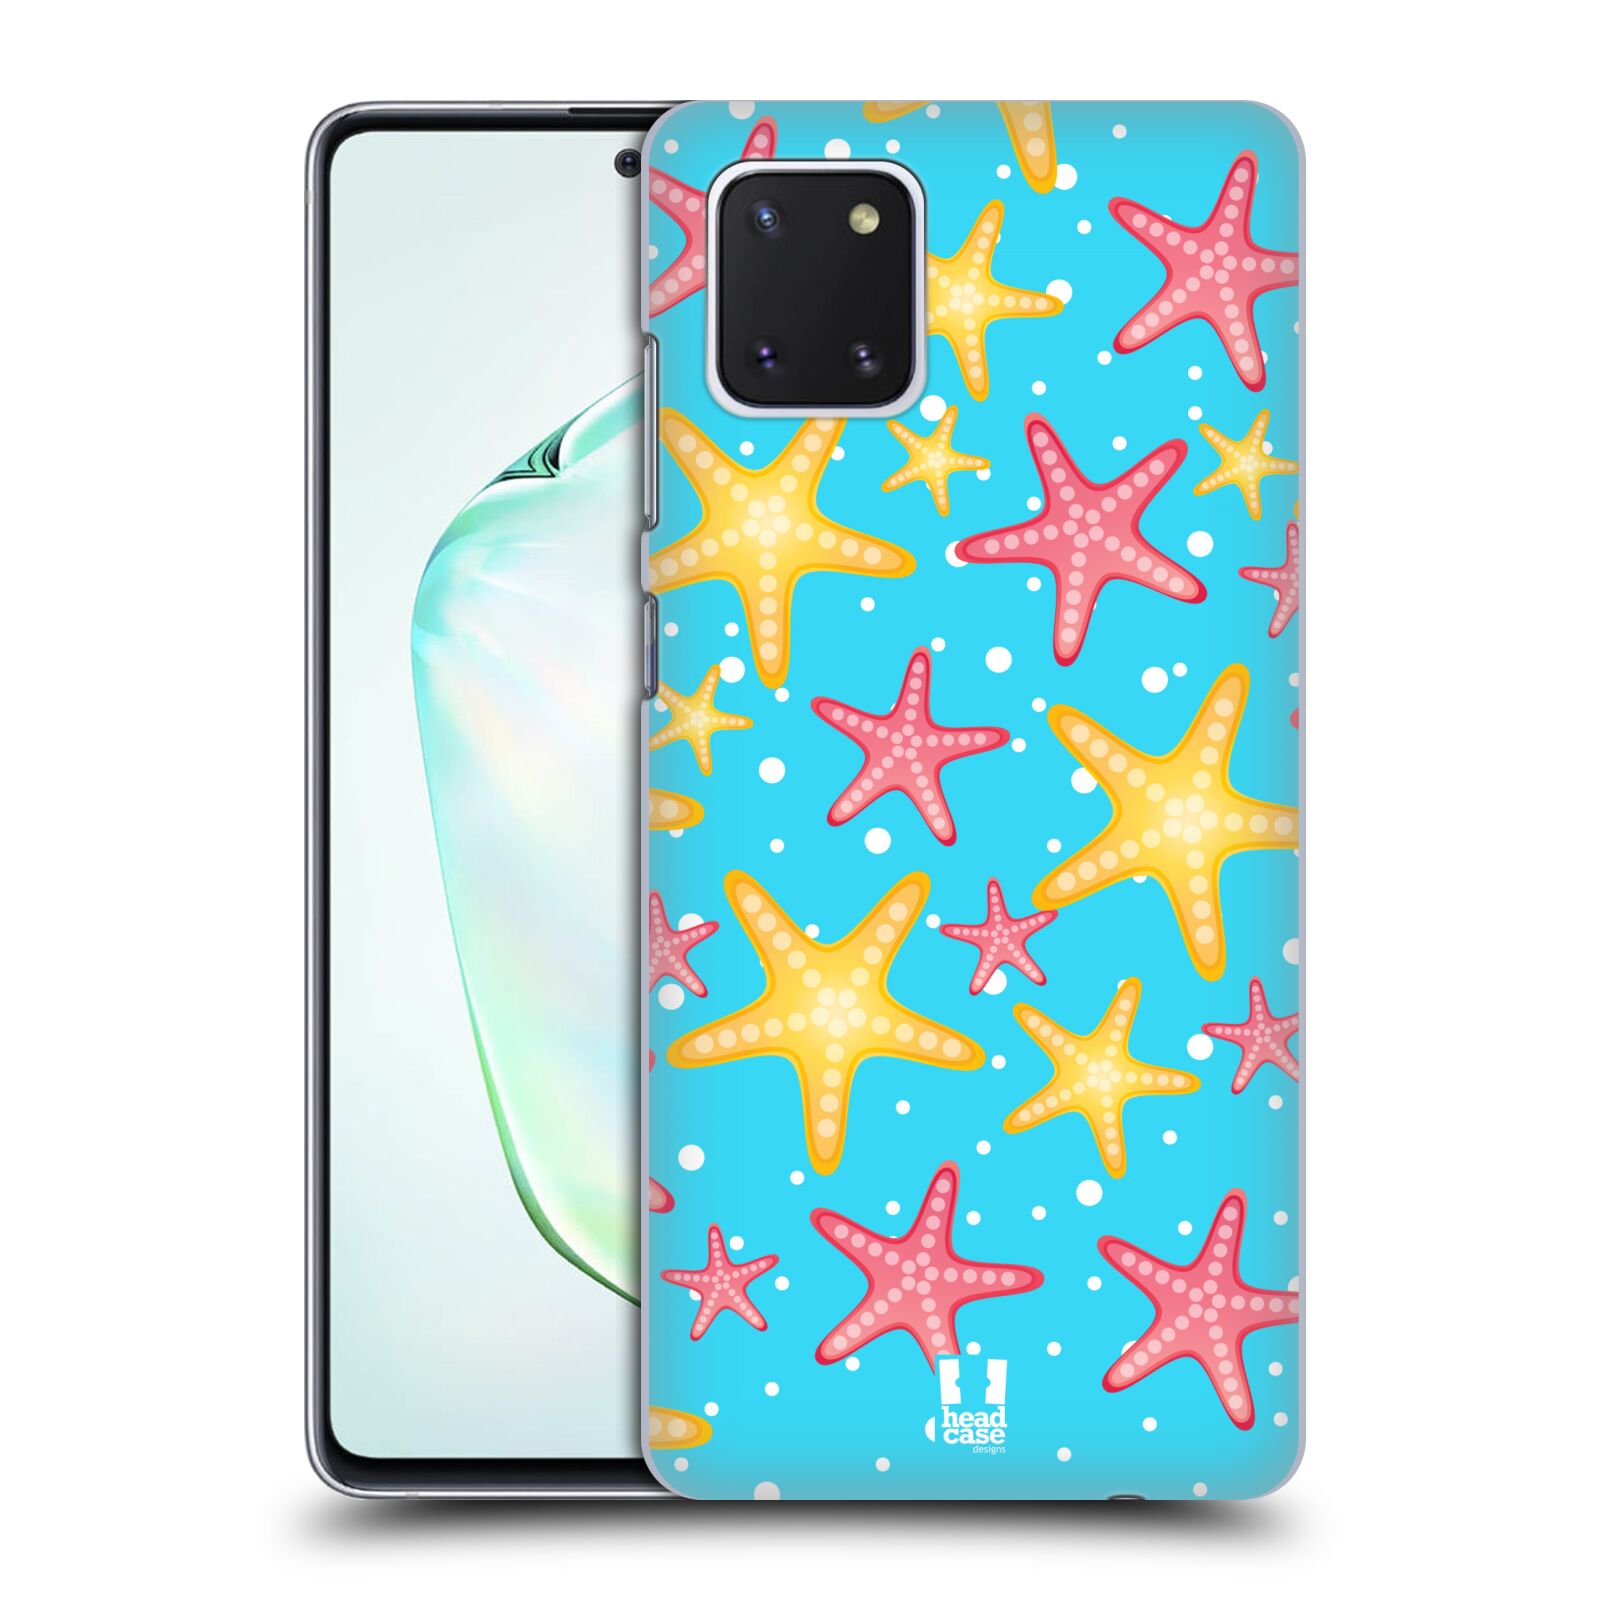 Zadní obal pro mobil Samsung Galaxy Note 10 Lite - HEAD CASE - kreslený mořský vzor hvězda